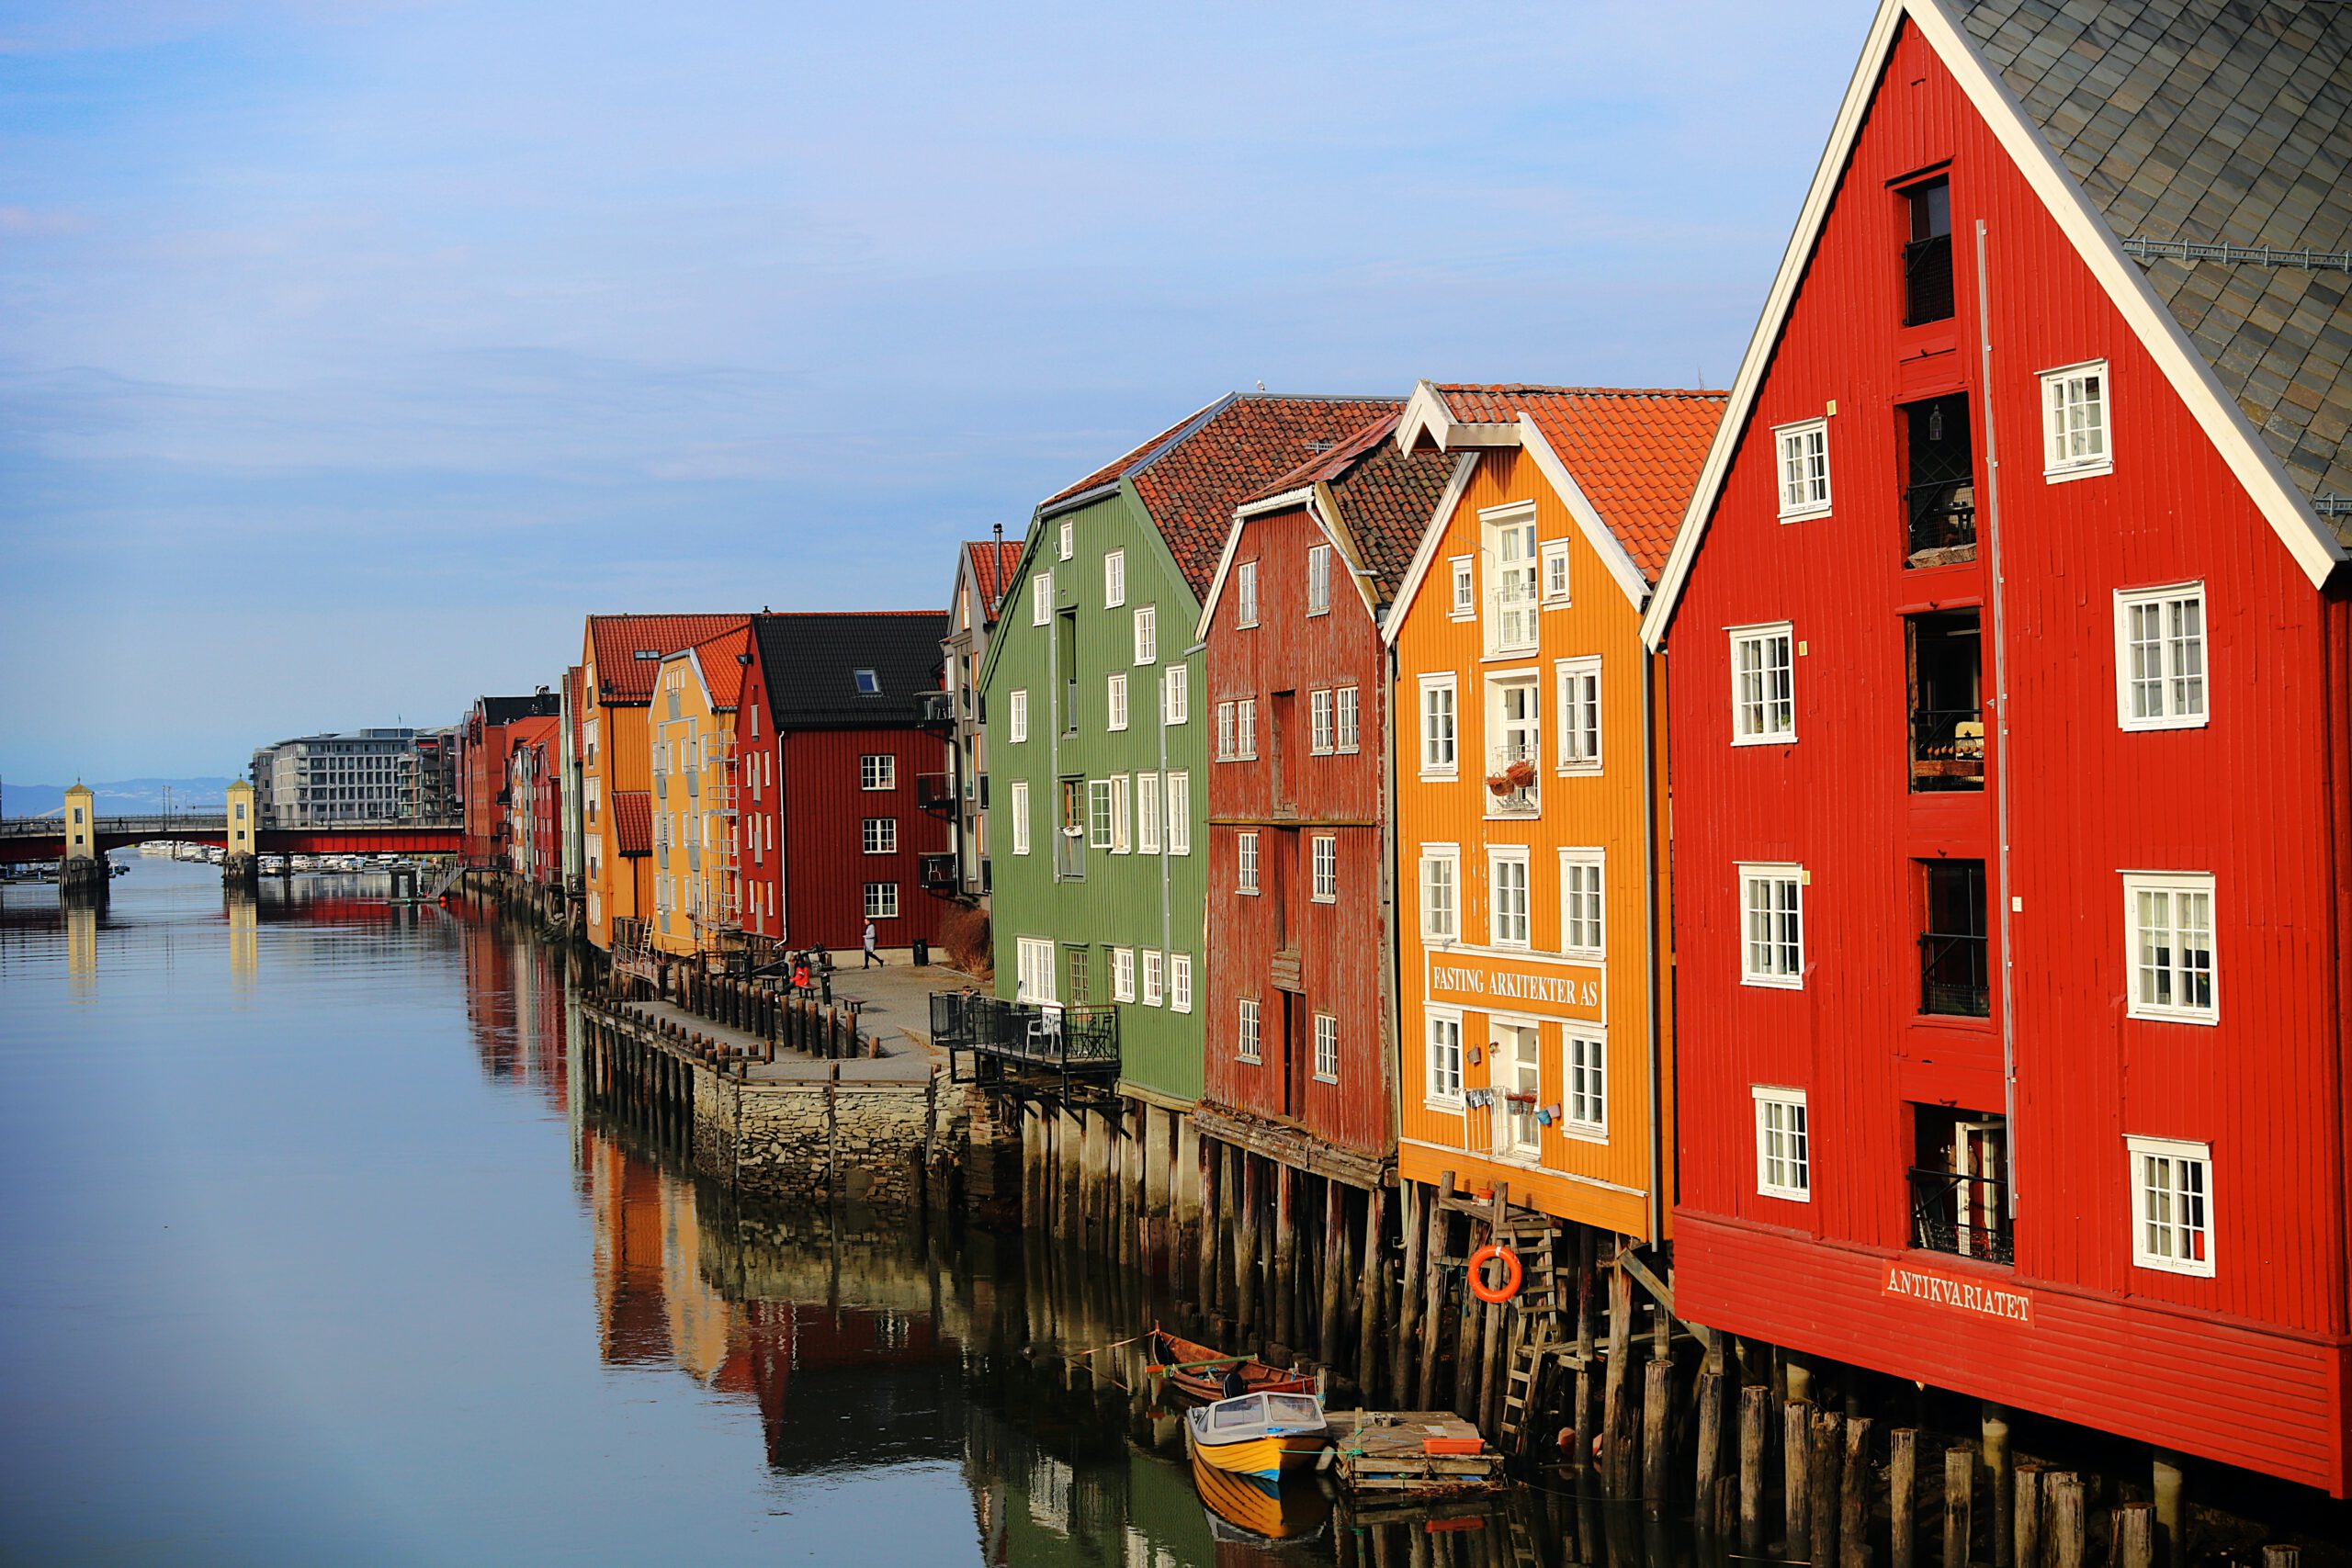 noorwegen-trondheim-gekleurde huizen-water-bruggetje